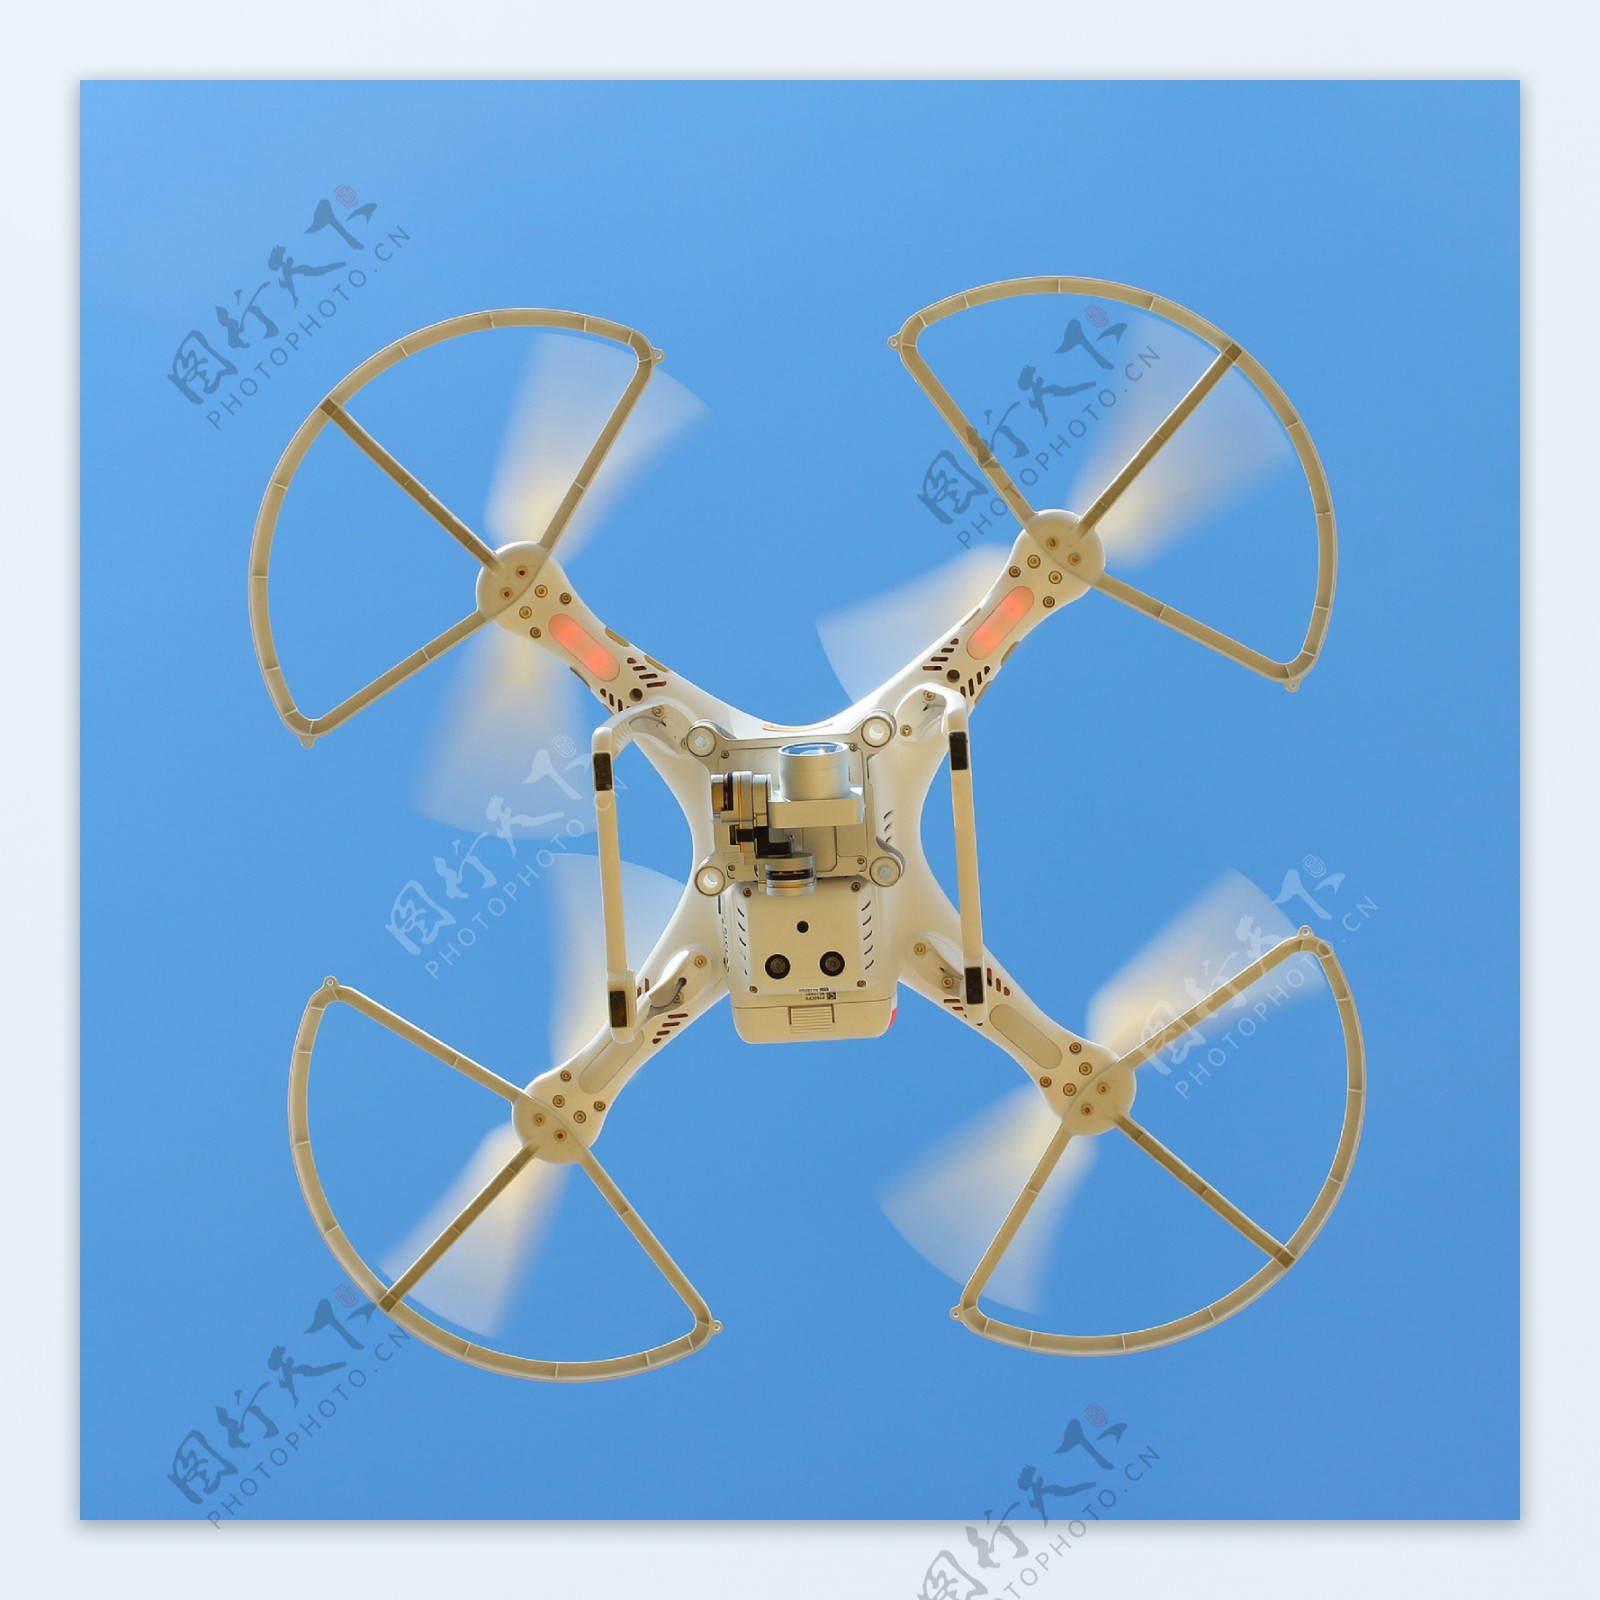 四旋翼无人机航拍器材图片